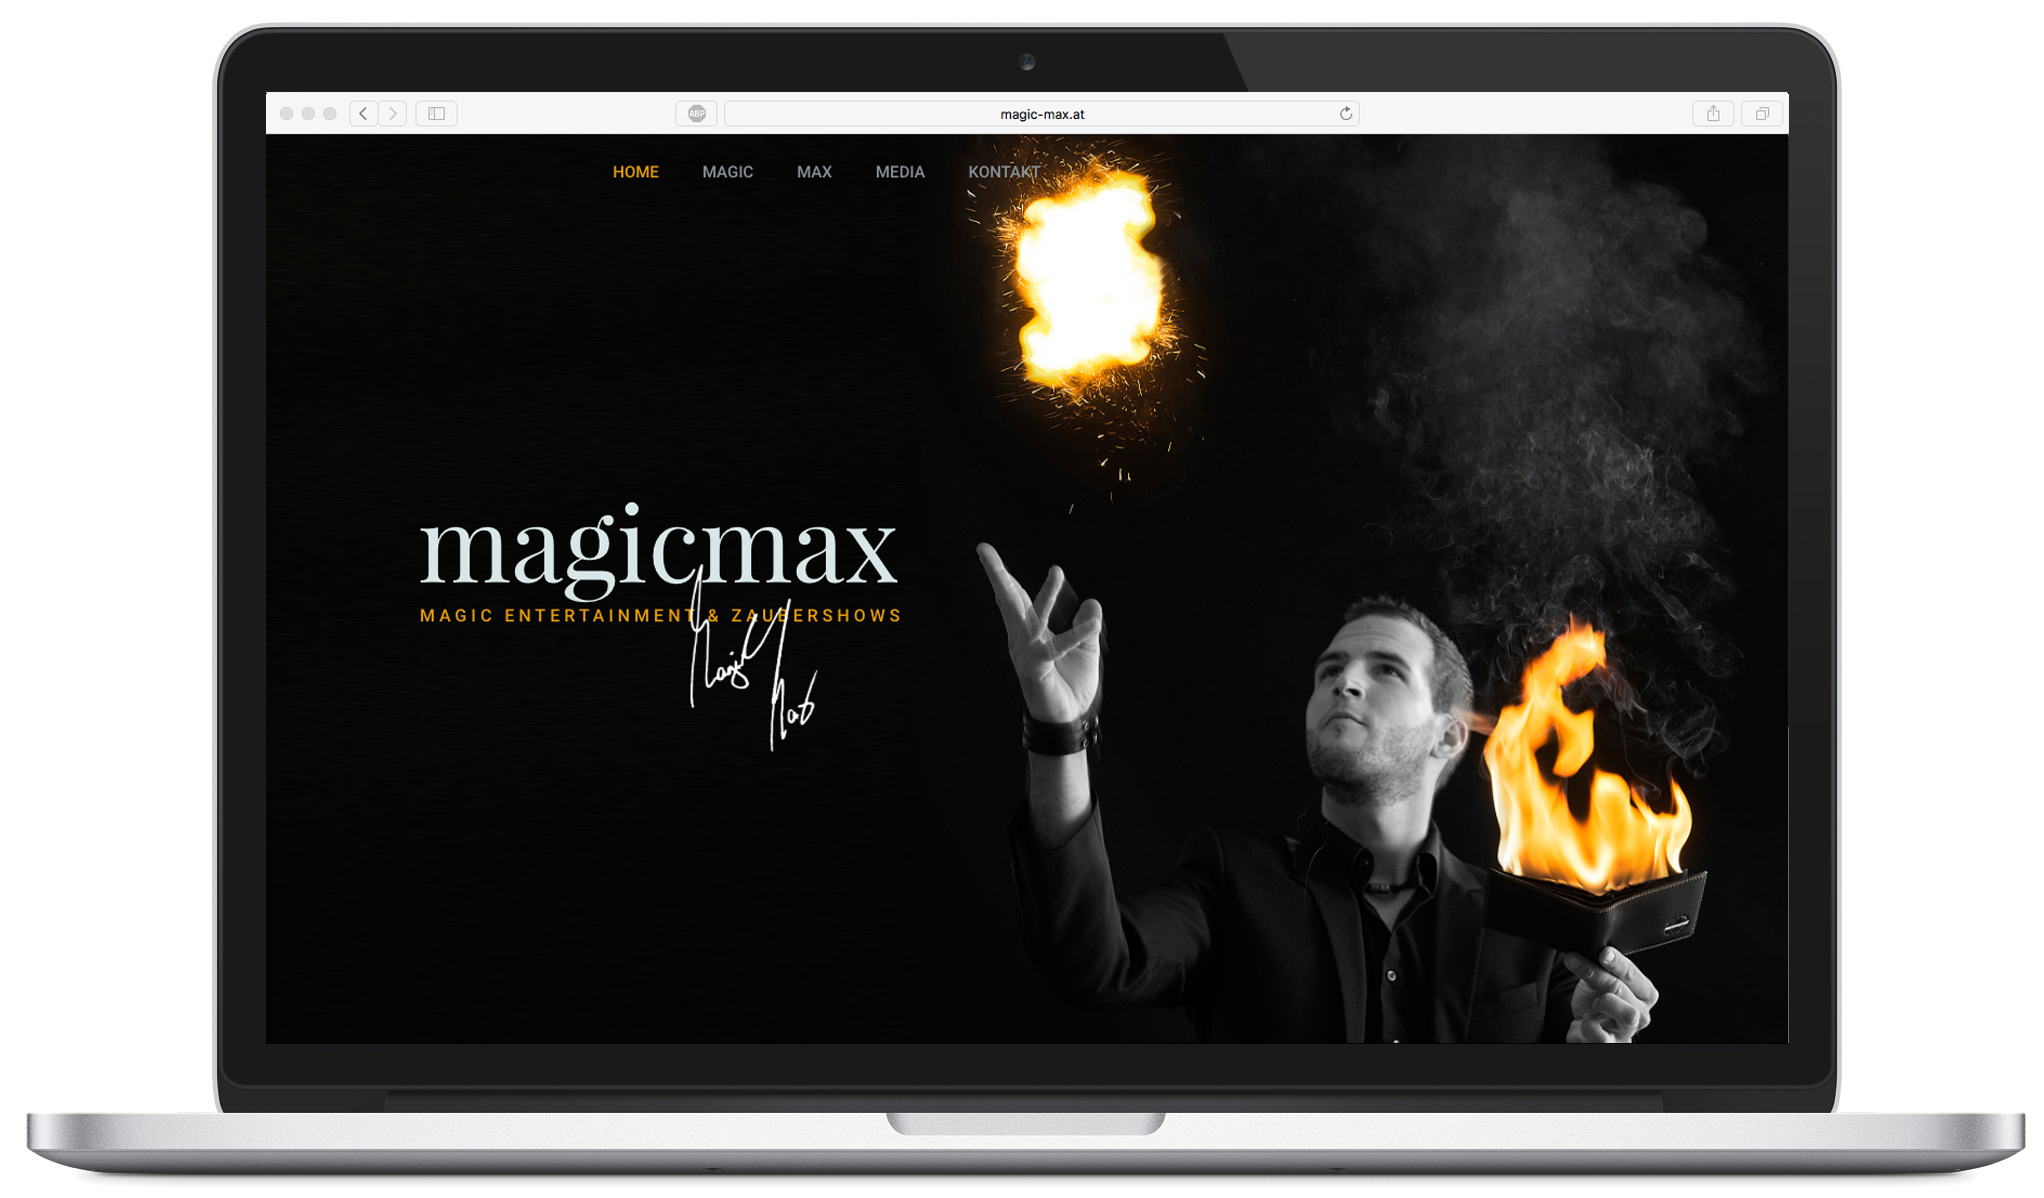 Internetauftritt www.magic-max.at